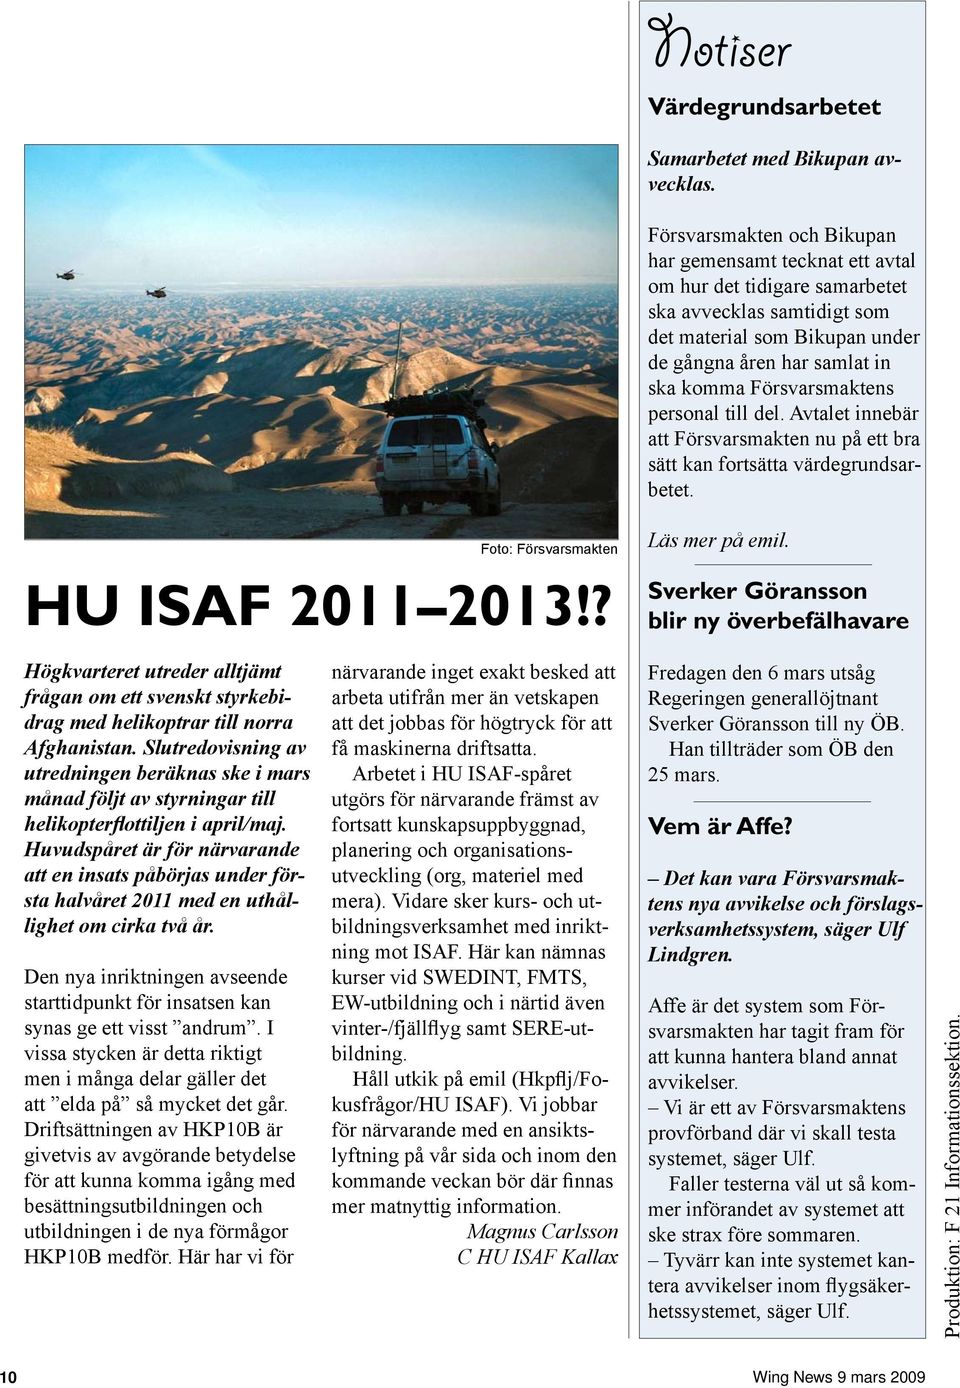 Försvarsmaktens personal till del. Avtalet innebär att Försvarsmakten nu på ett bra sätt kan fortsätta värdegrundsarbetet. HU ISAF 2011 2013!